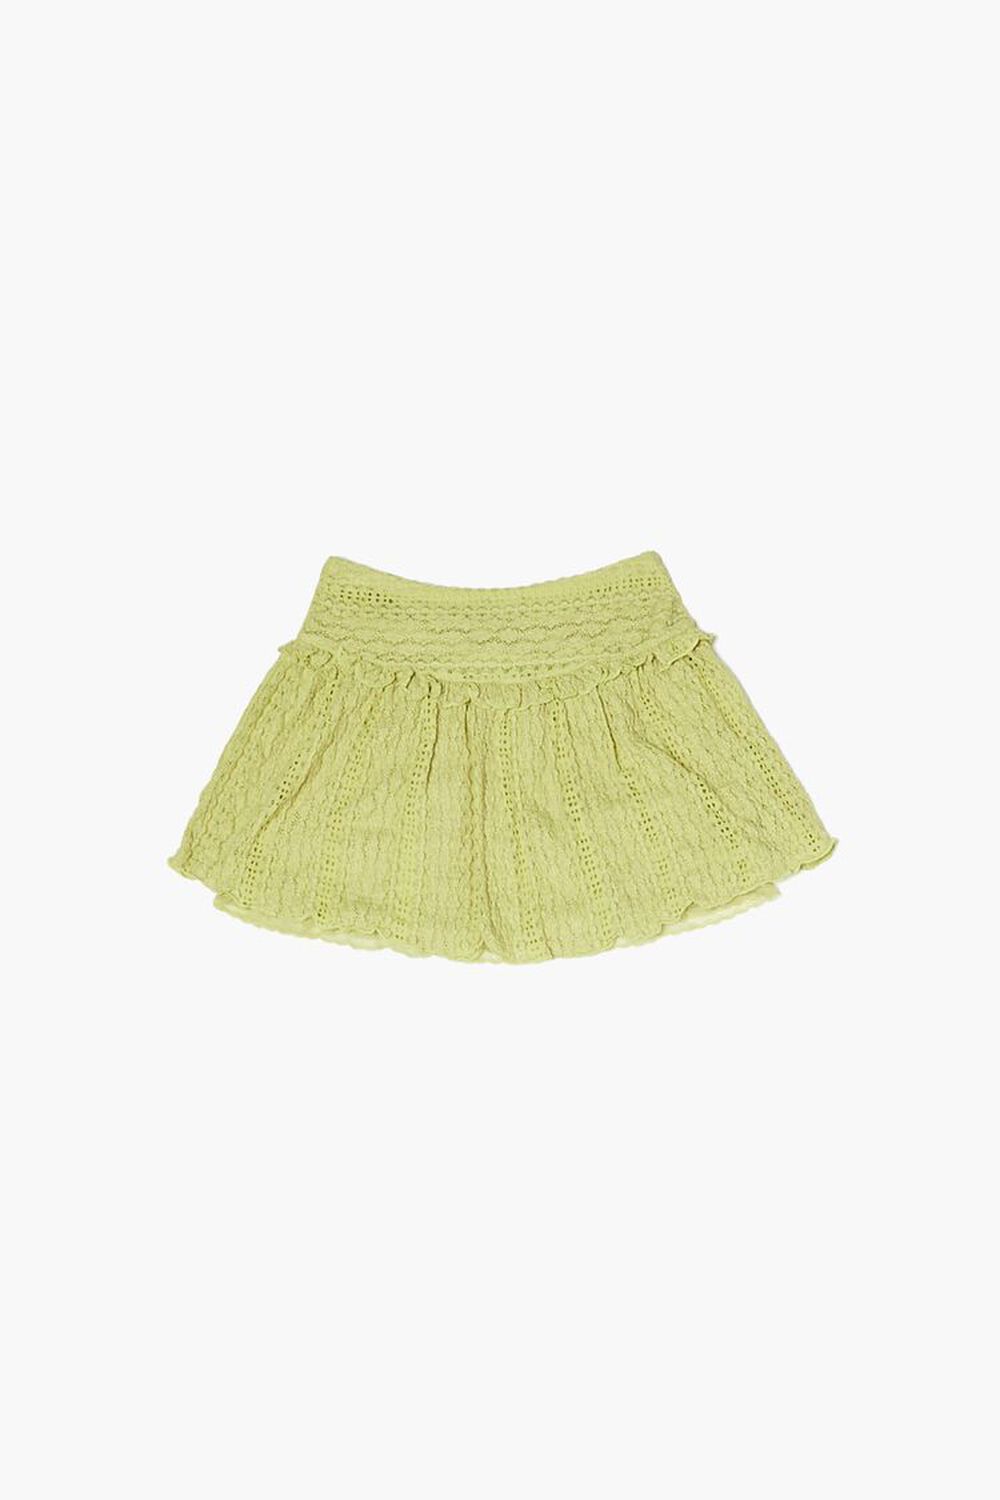 HERBAL GREEN Girls Lettuce-Trim Skirt (Kids), image 1